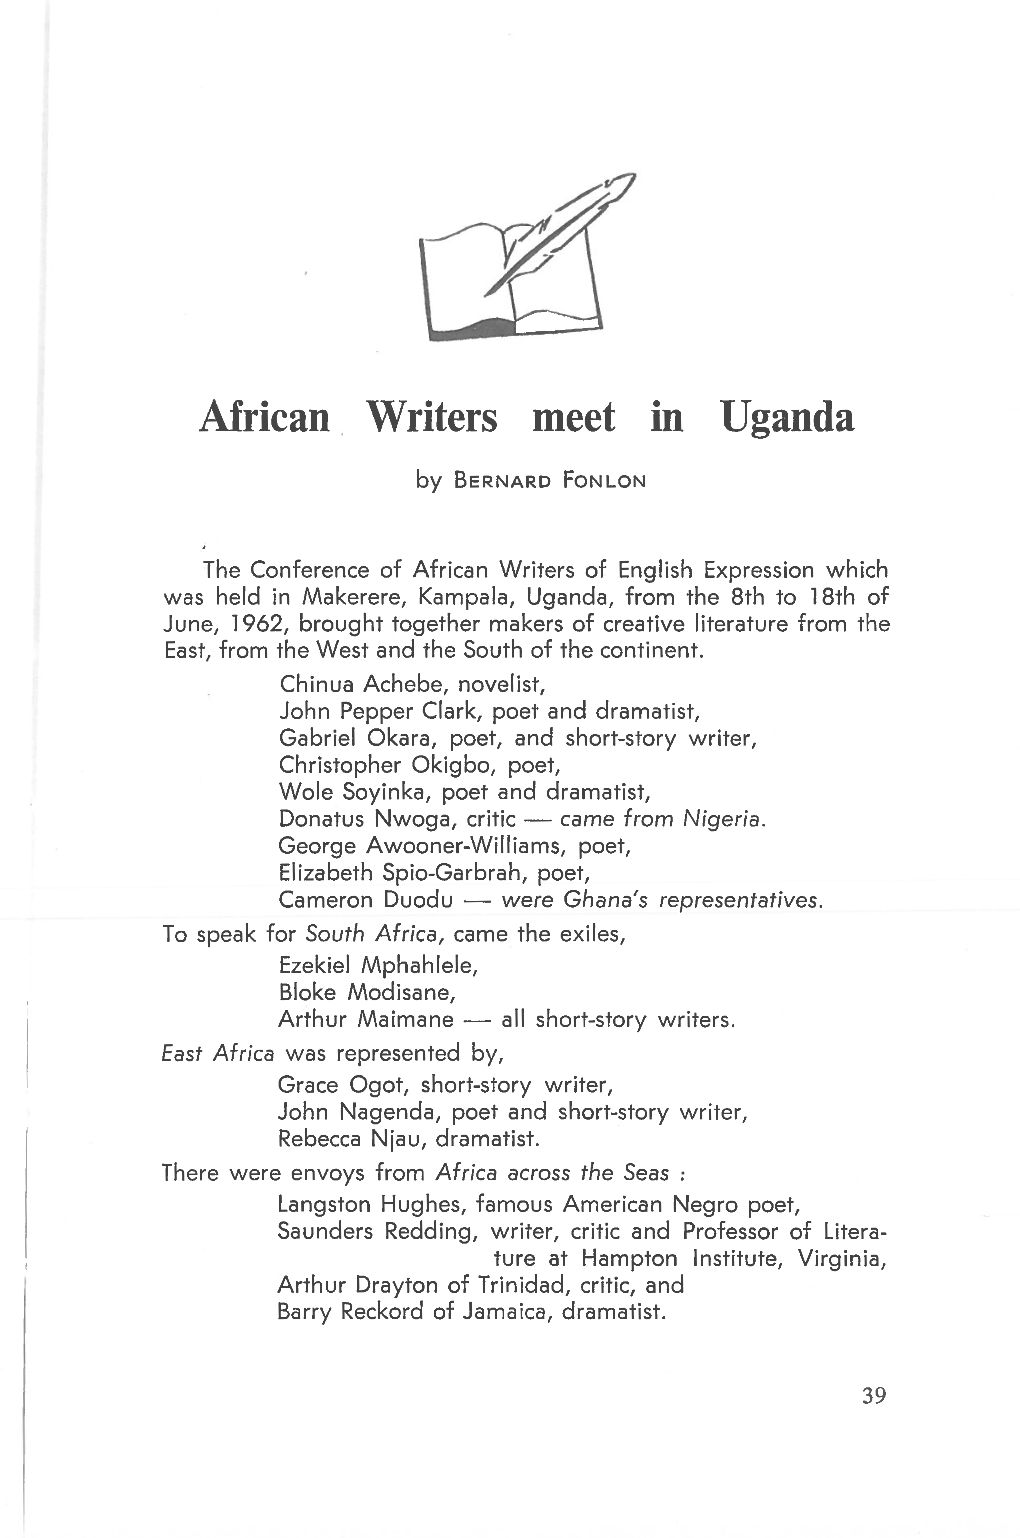 African Writers Meet in Uganda